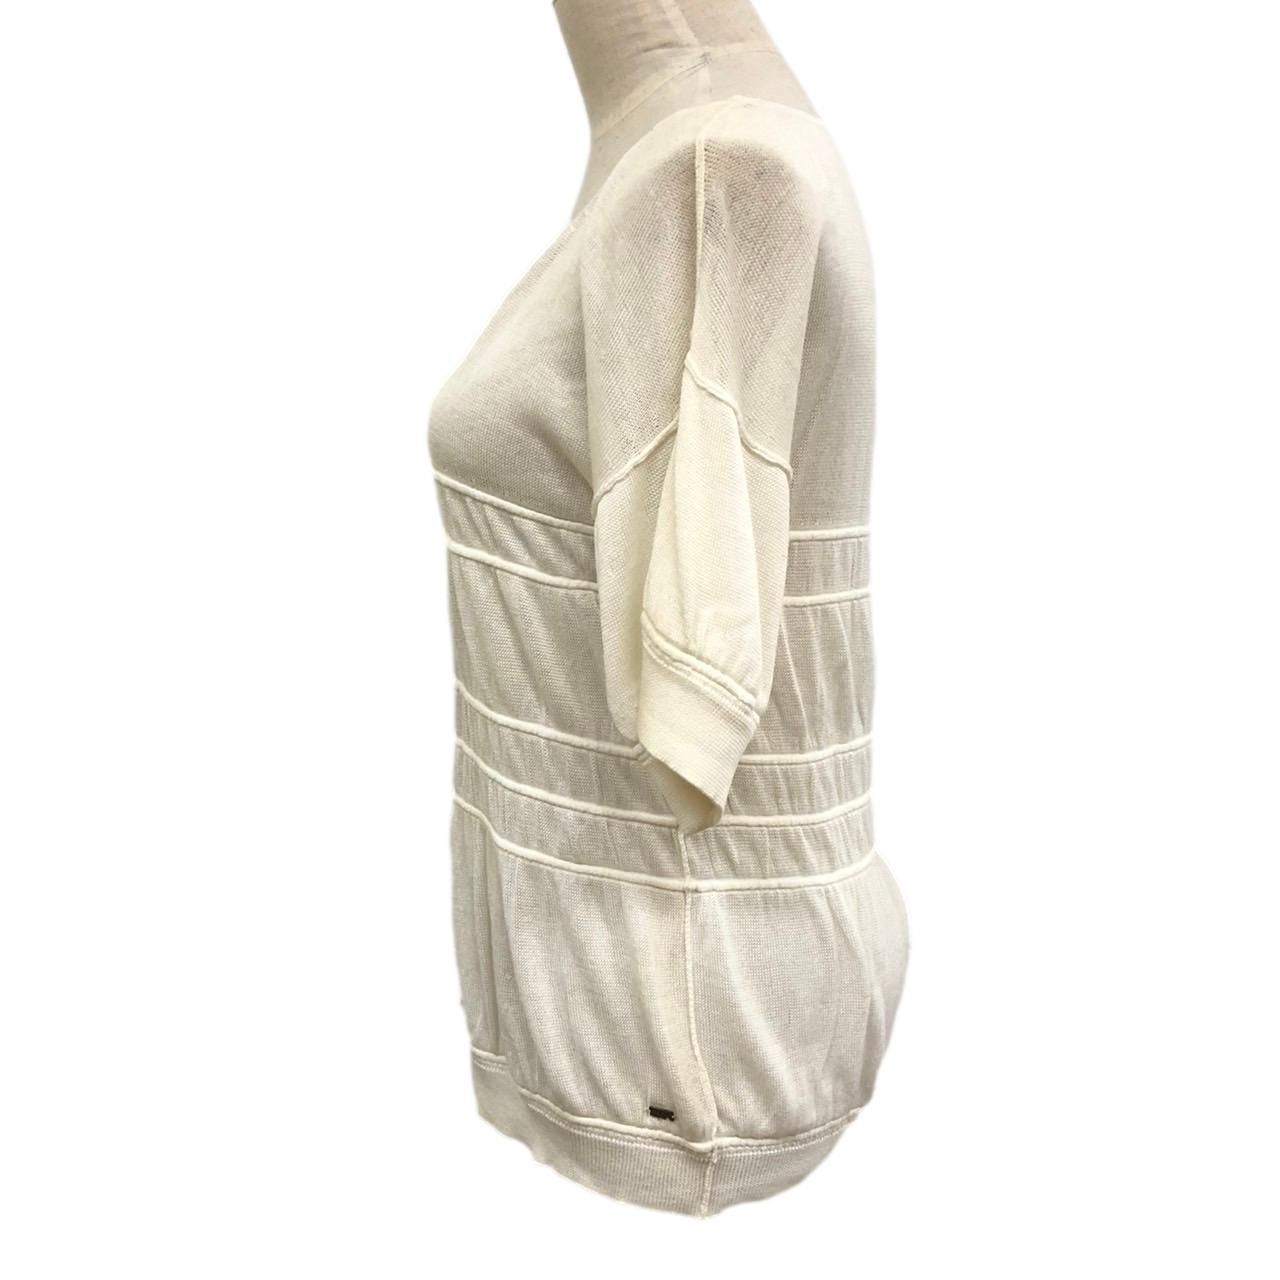 SONIA RYKIEL ニット 半袖 42 サイズ使用用途Tシャツカットソー半袖